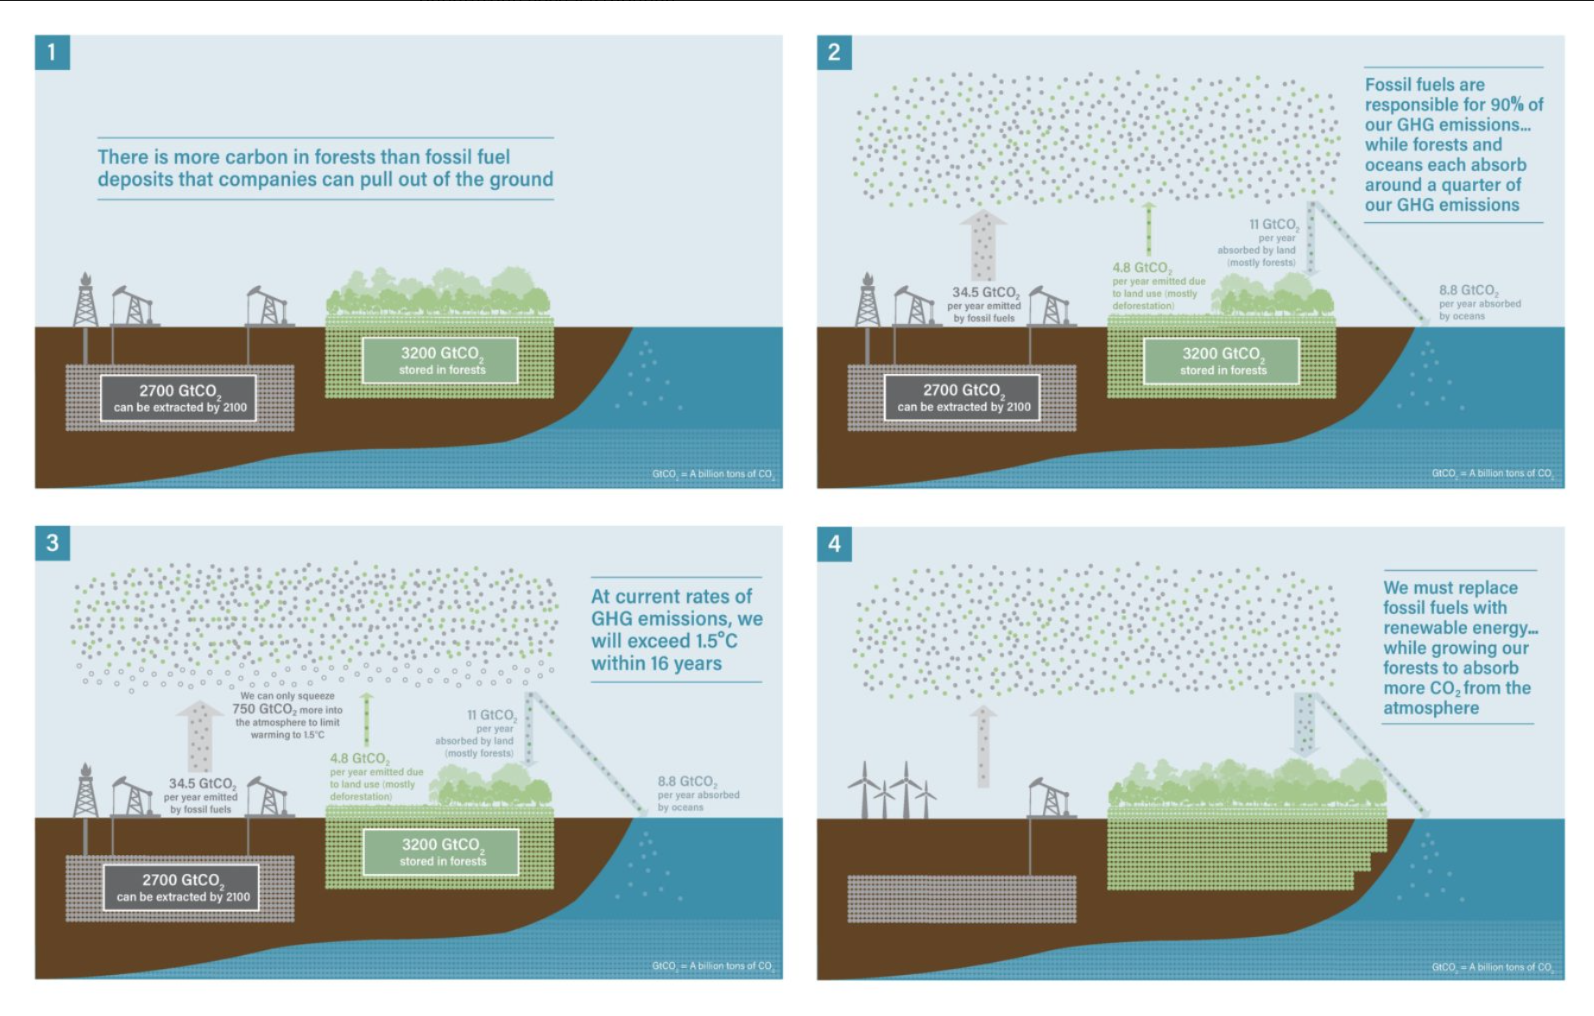 Bomen en wij samen tegen CO2 - illustratie uit het artikel van Leontien Aarnoudse op OneWorld.